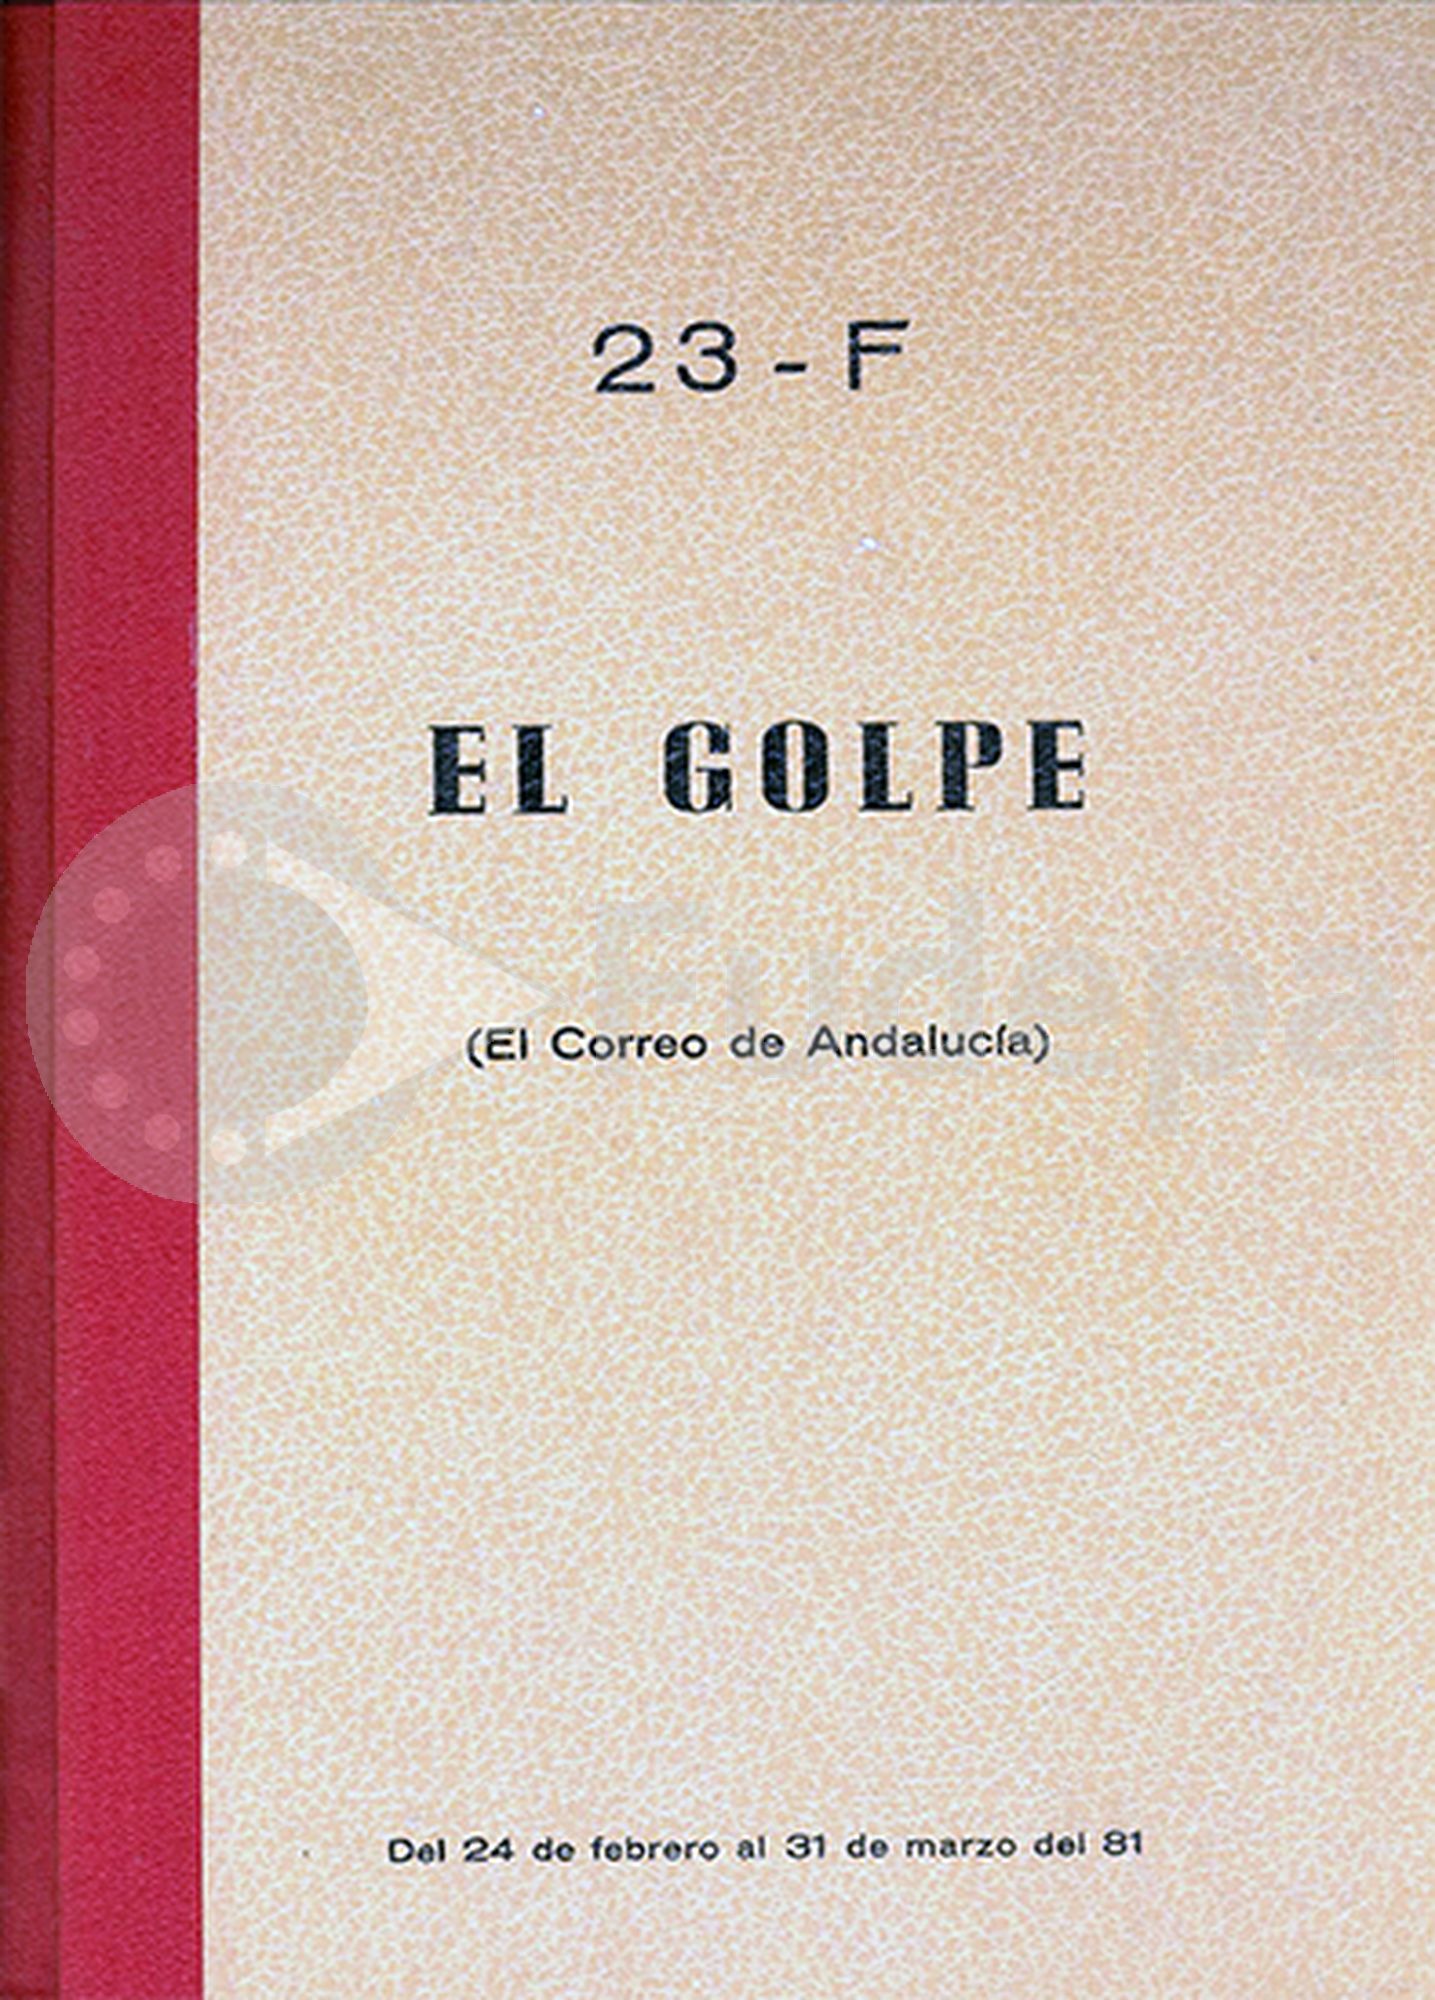 23-F. El Golpe. El Correo de Andalucía (dossier de prensa). Del 24 de febrero al 31 de marzo de 1981. Donado por Manuel del Valle Arévalo. FUDEPA. AHUGT-A: H355.1